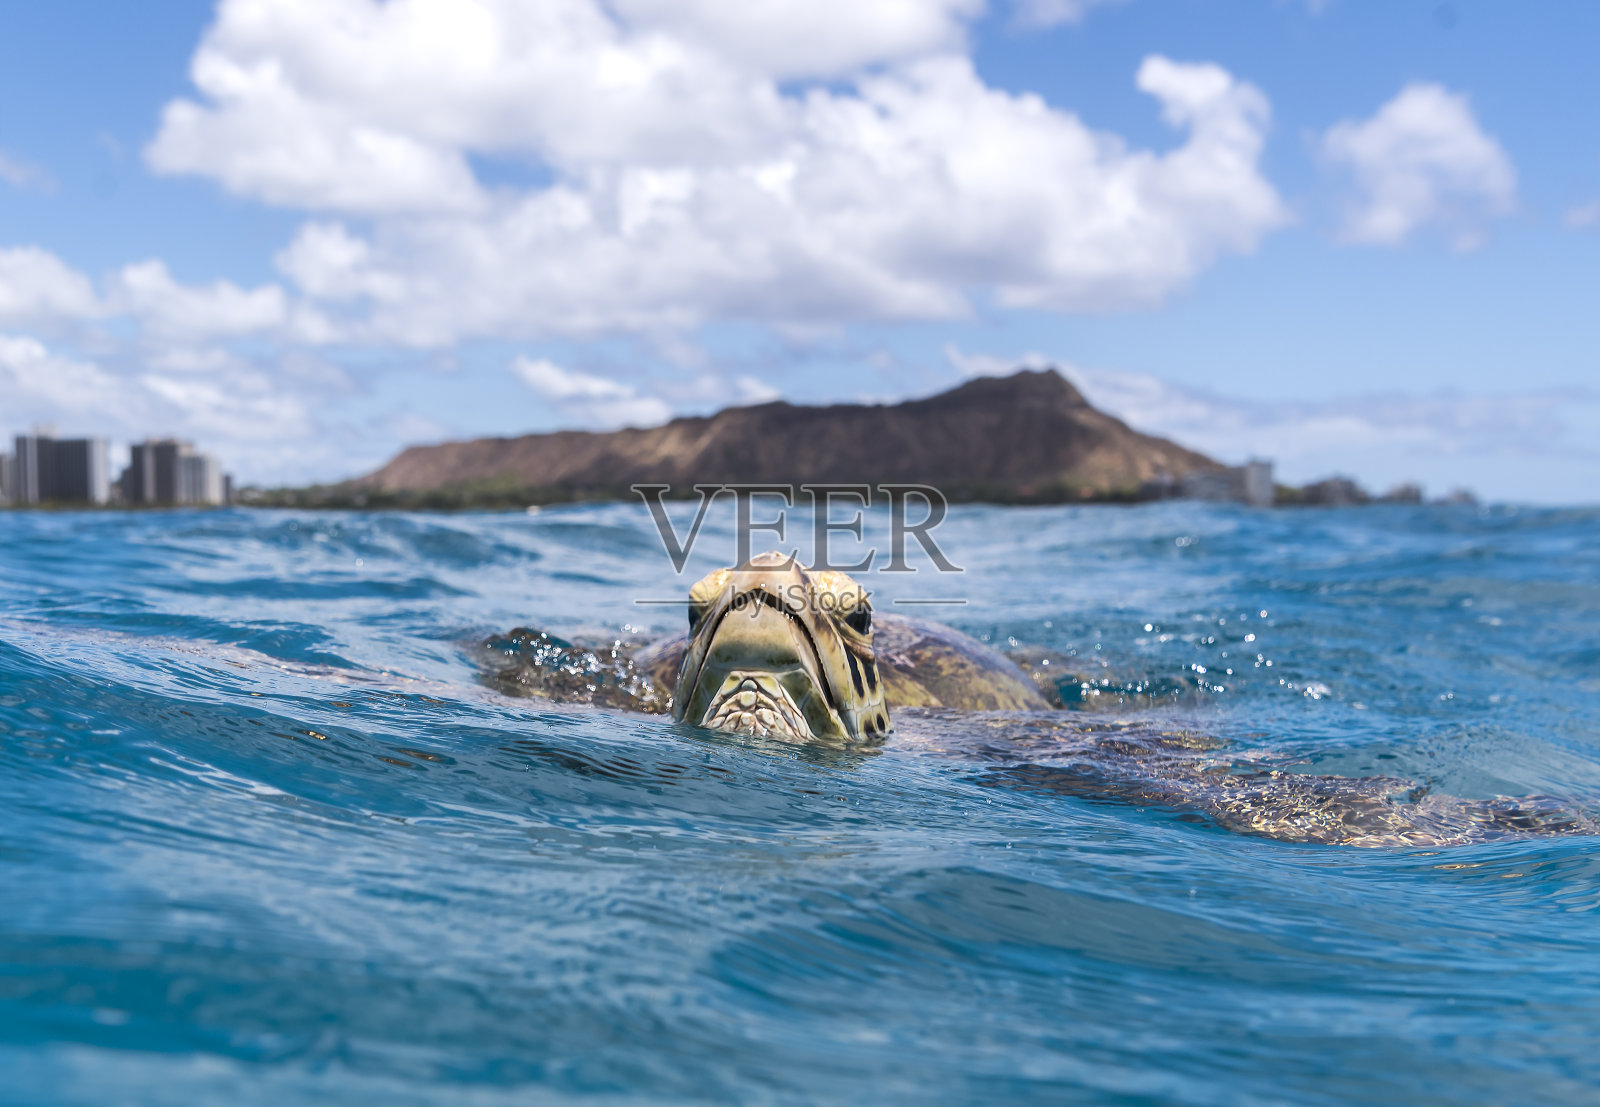 乌龟的威基基海滩照片摄影图片